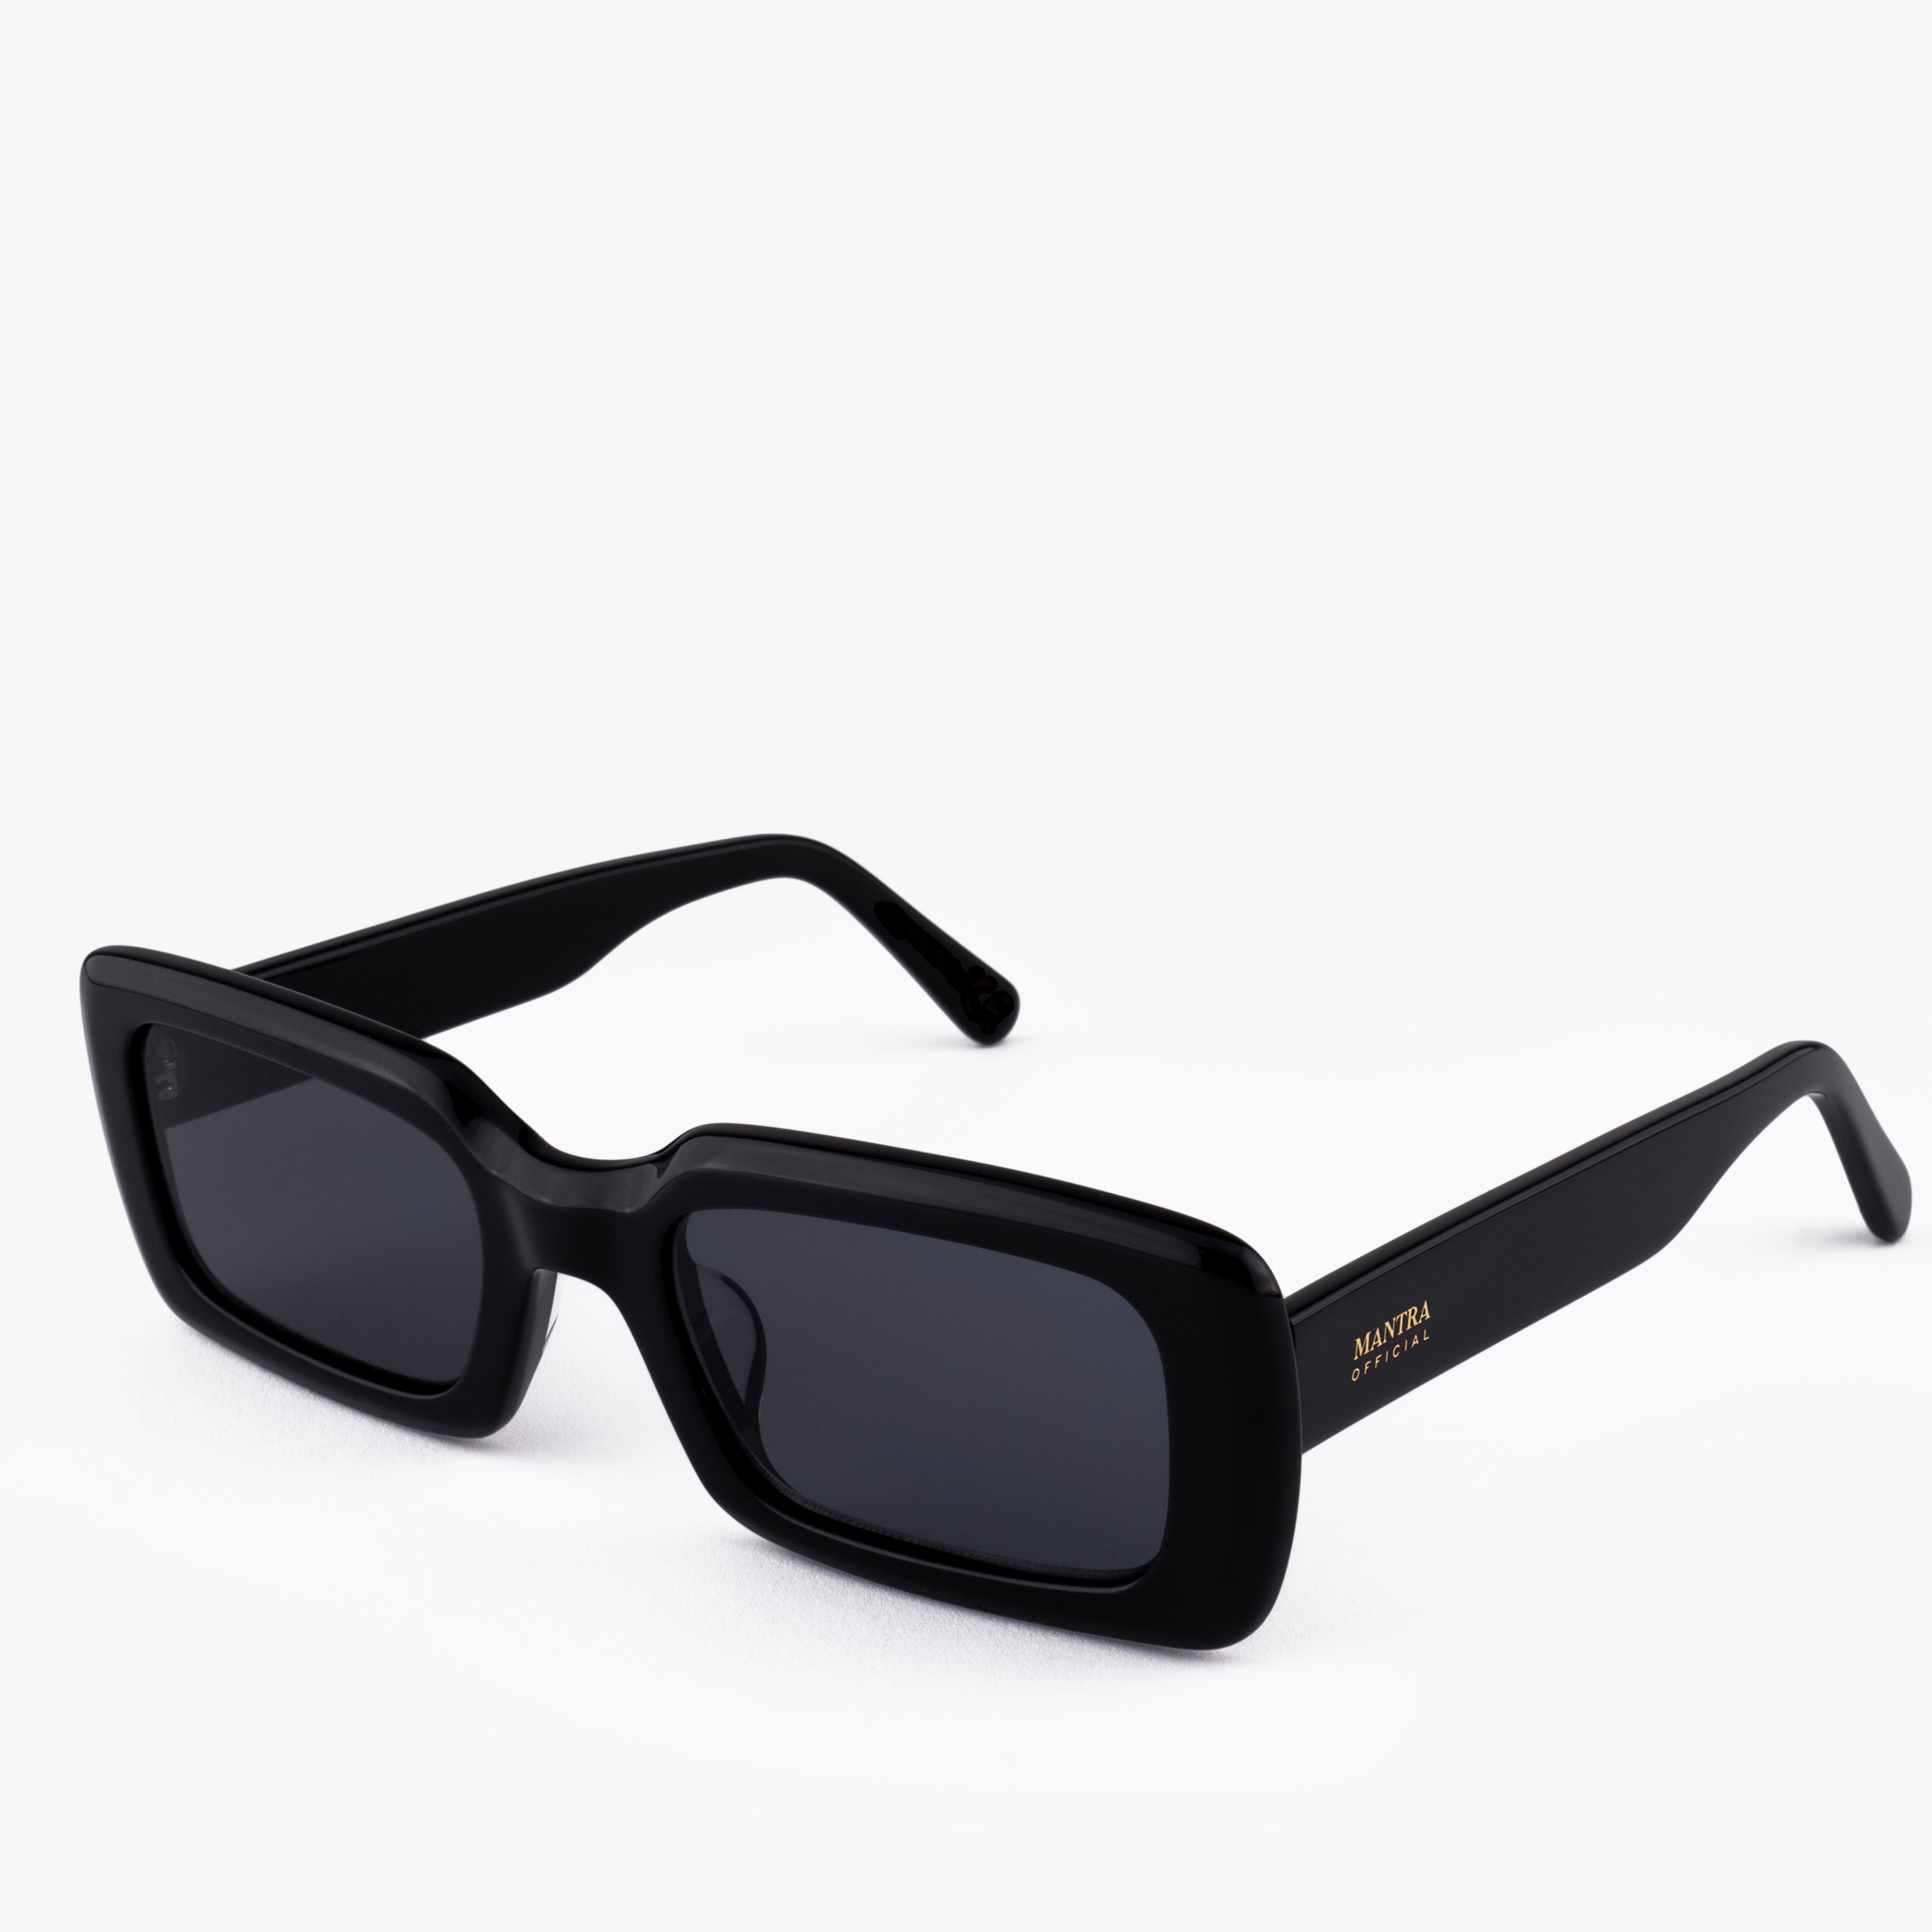 Demi Sunglasses Black Rectangular Frame